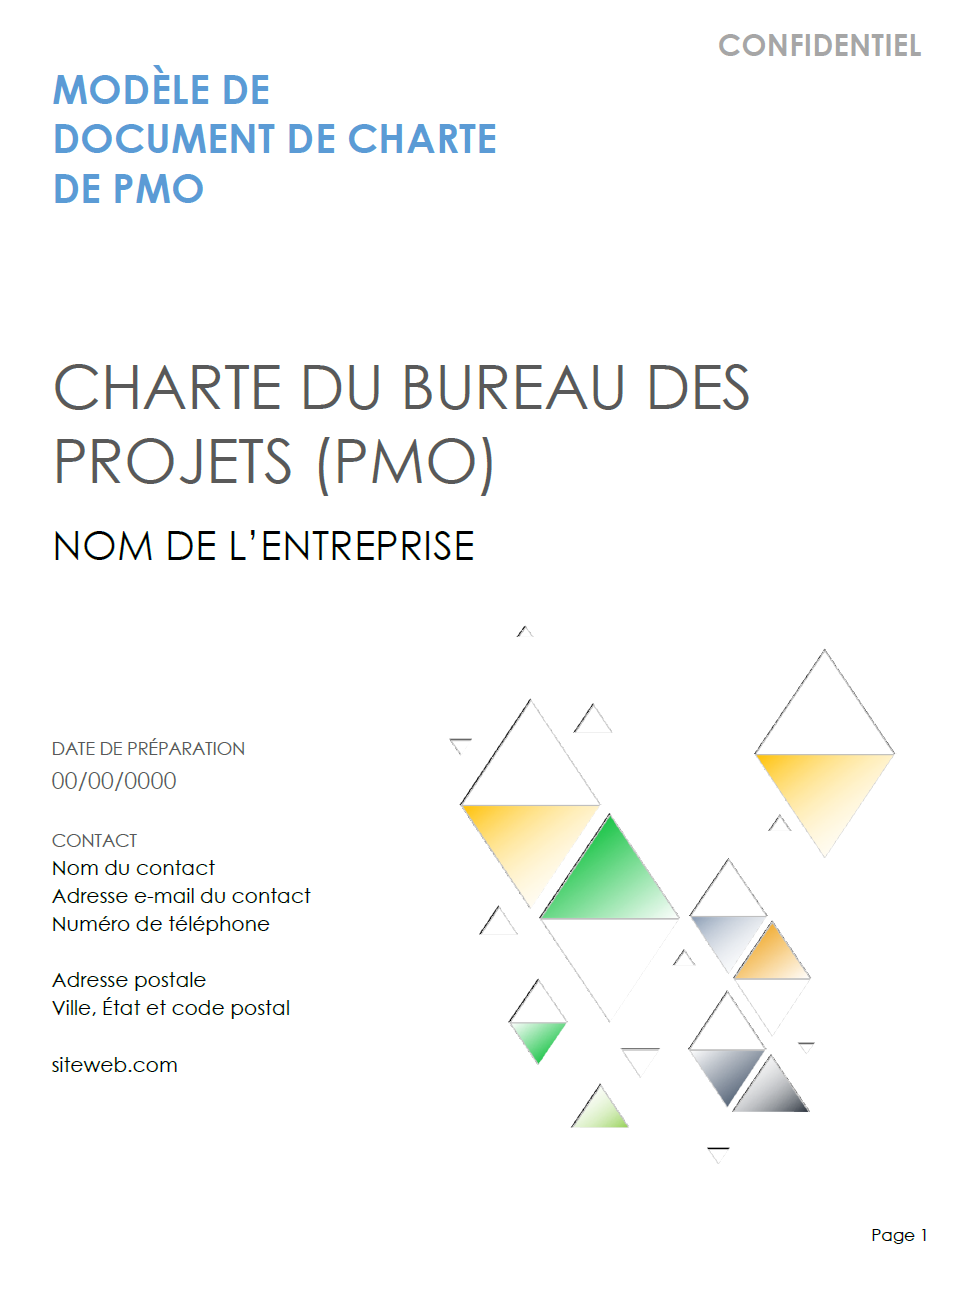  Modèle de document de charte PMO